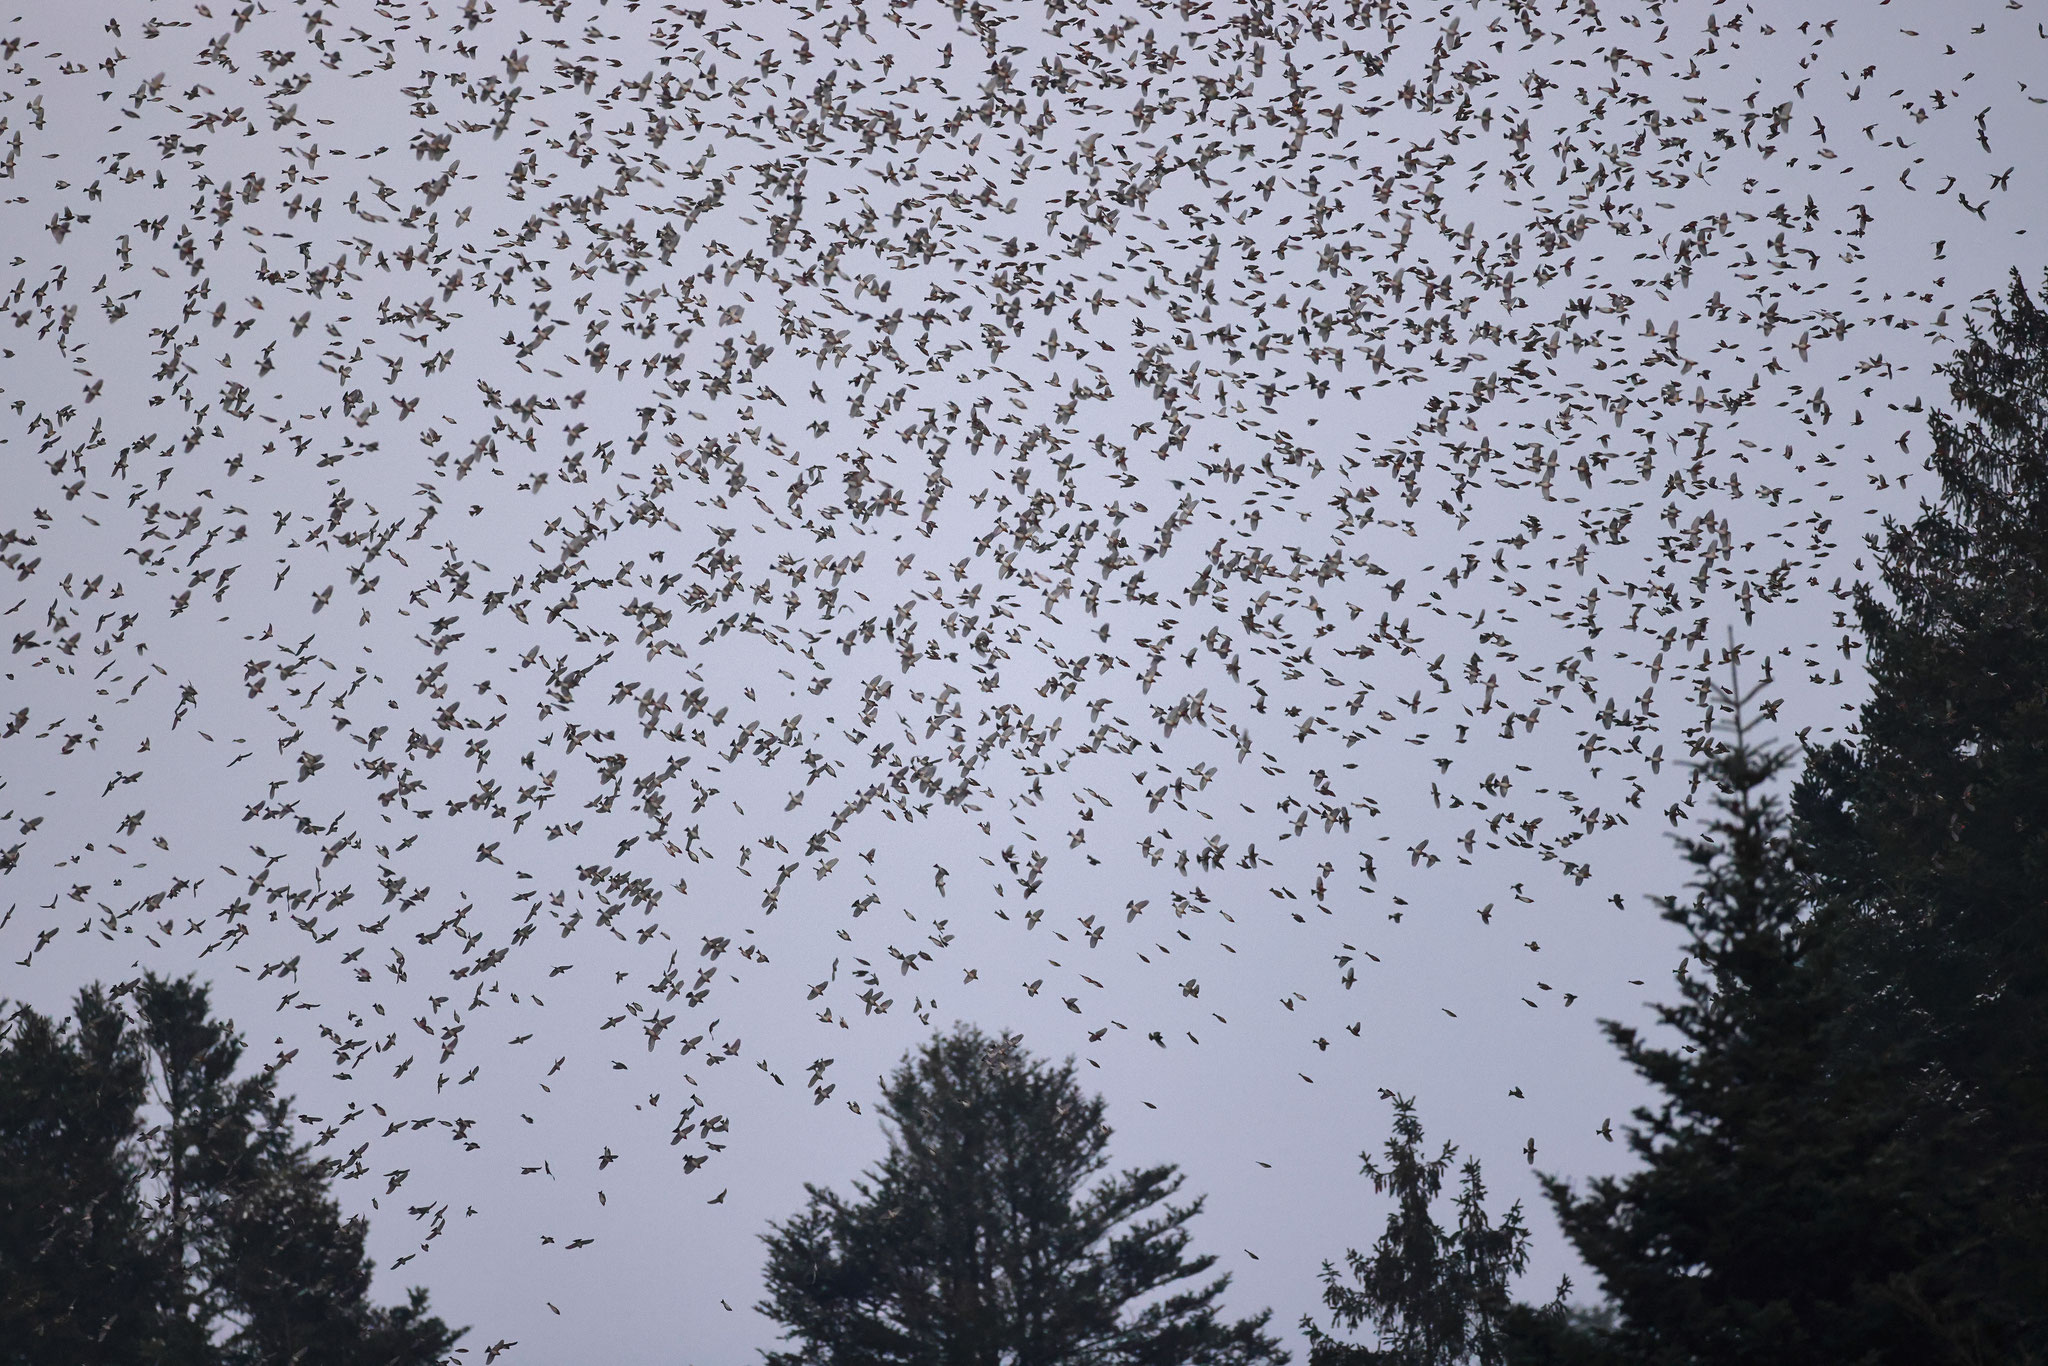 Das Spektakel mit weit über einer Million Vögel ist unvergleichbar (nähere Angaben zum Ort unter www.ornitho.ch)